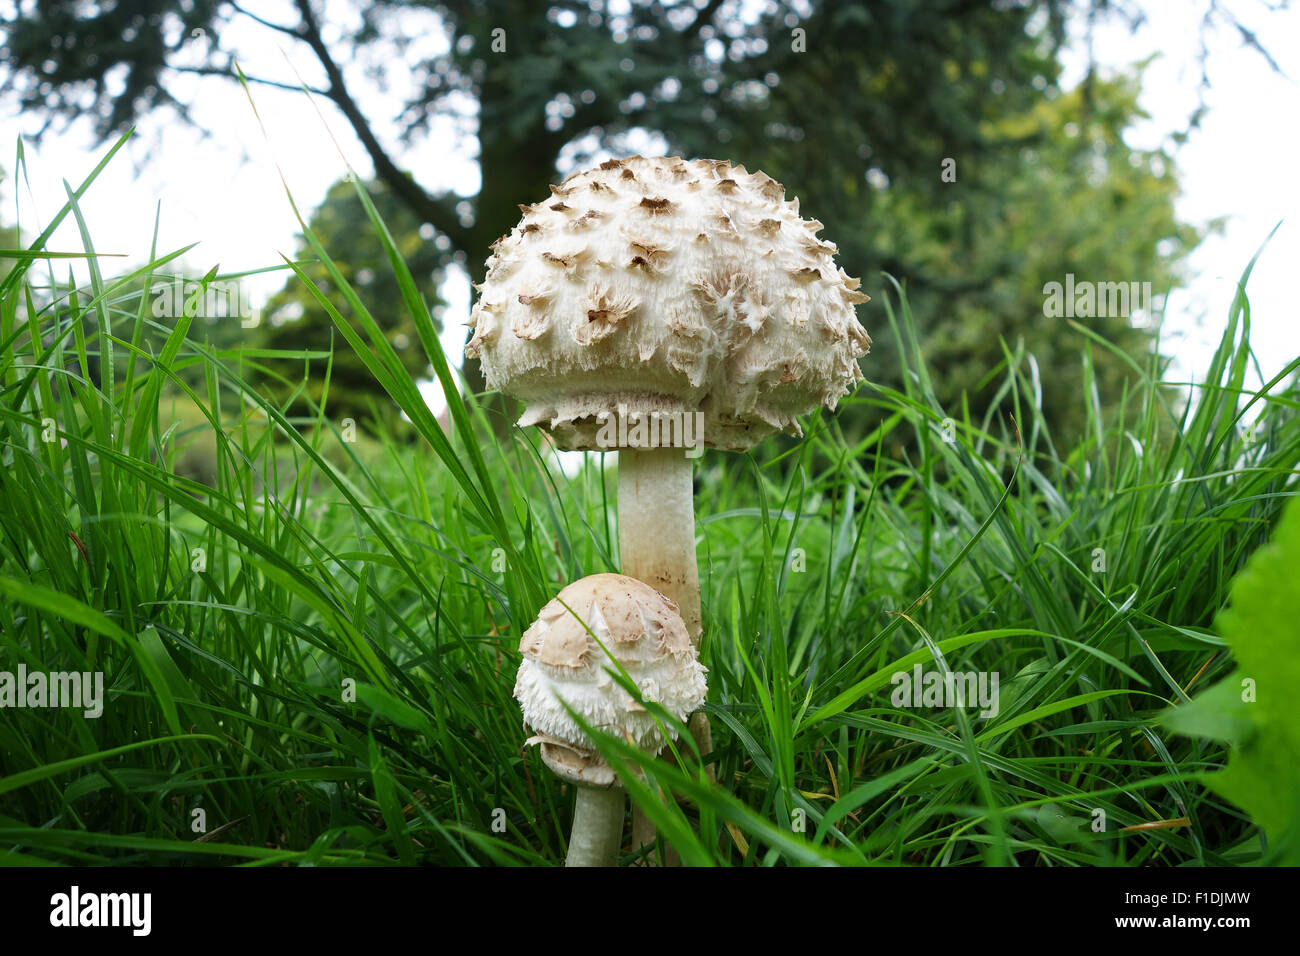 Chlorophyllum rhacodes  Vellinga - Shaggy Parasol mushroom uk Stock Photo